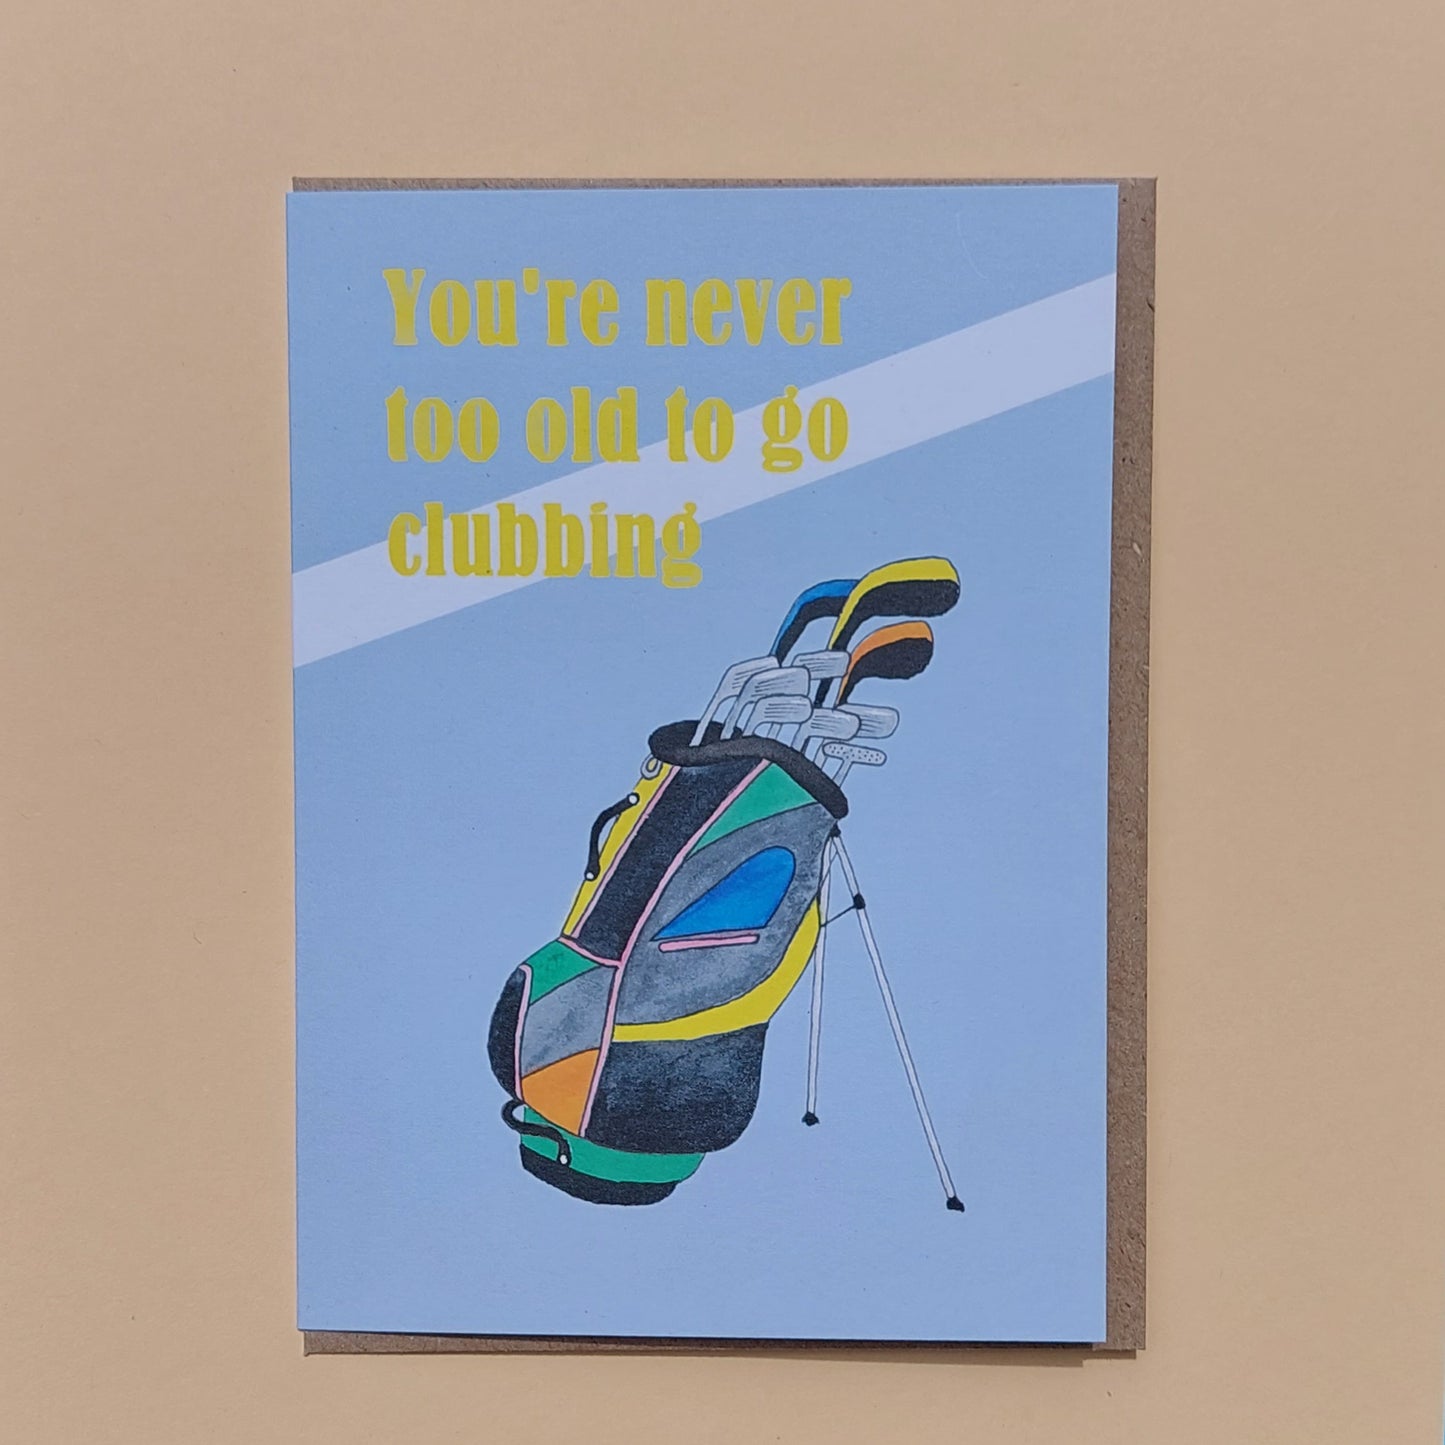 Golf Birthday Card